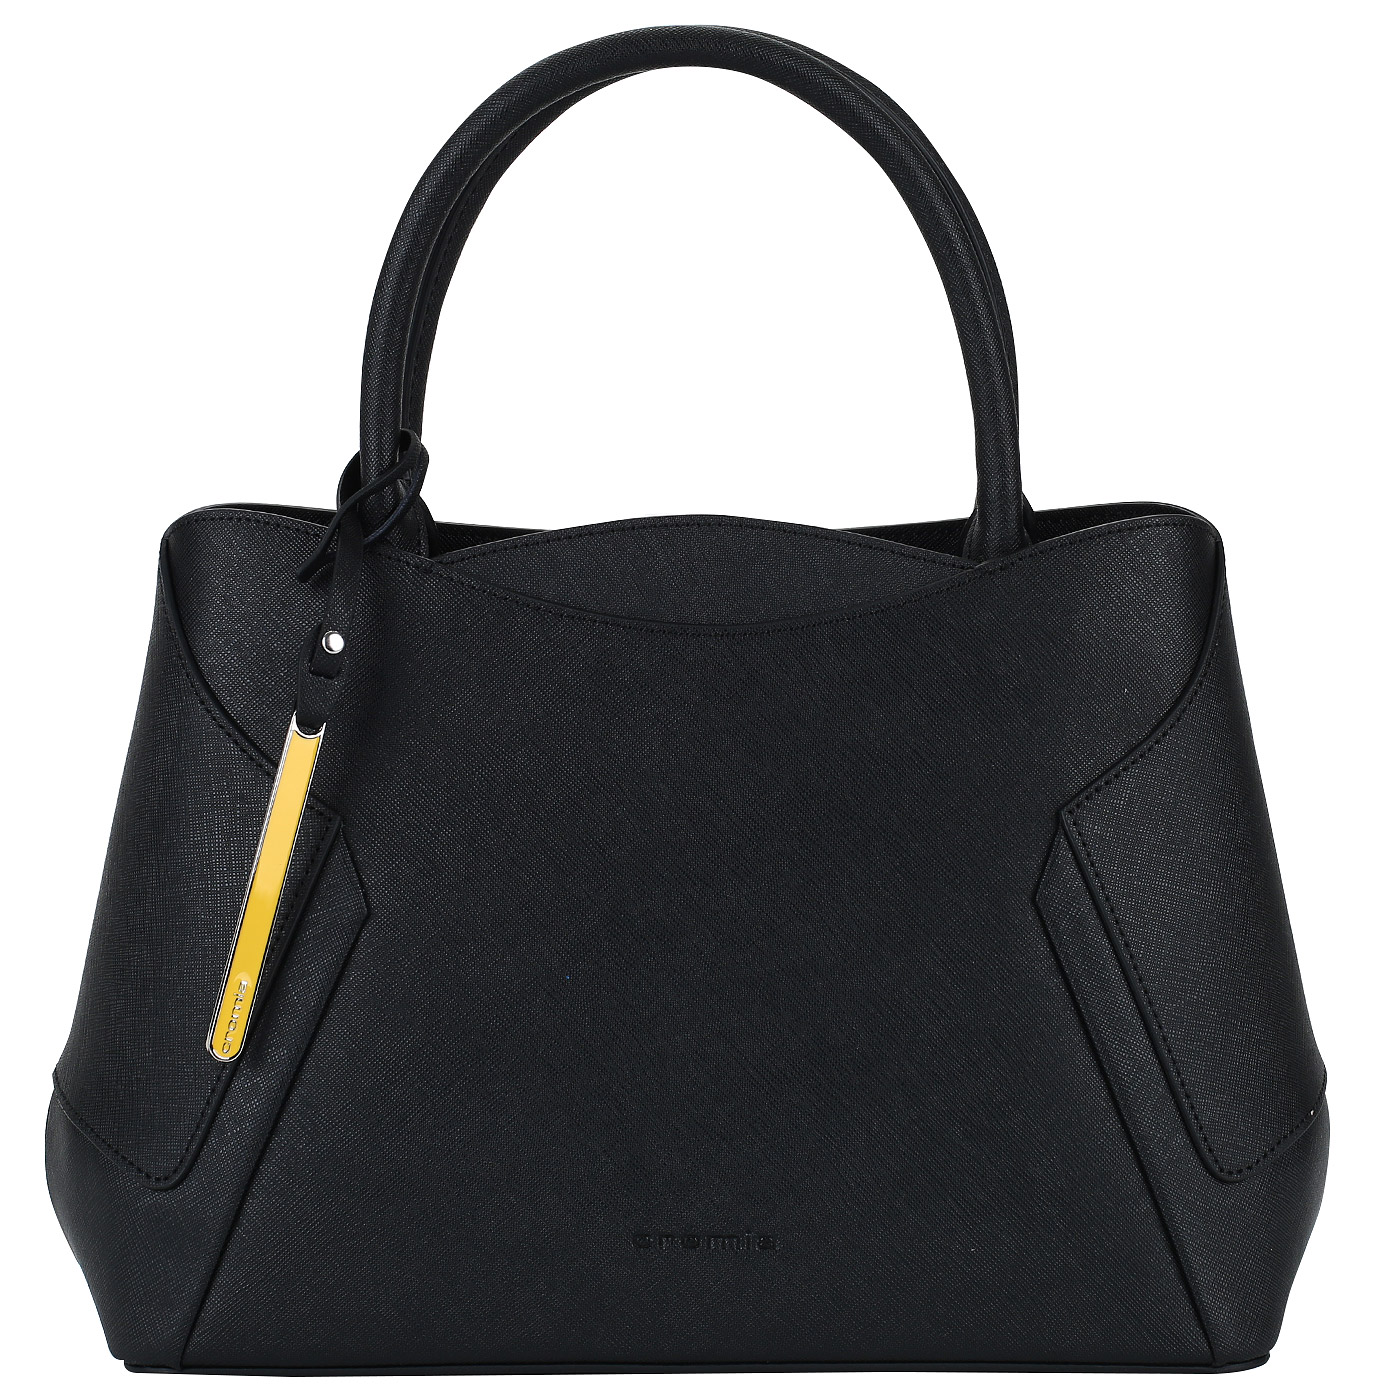 Сумка черная женская. Cromia сумки женские черные. Cromia сумка сумка черная. Черная сумка Cromia 2022. Сумки хромия черные.